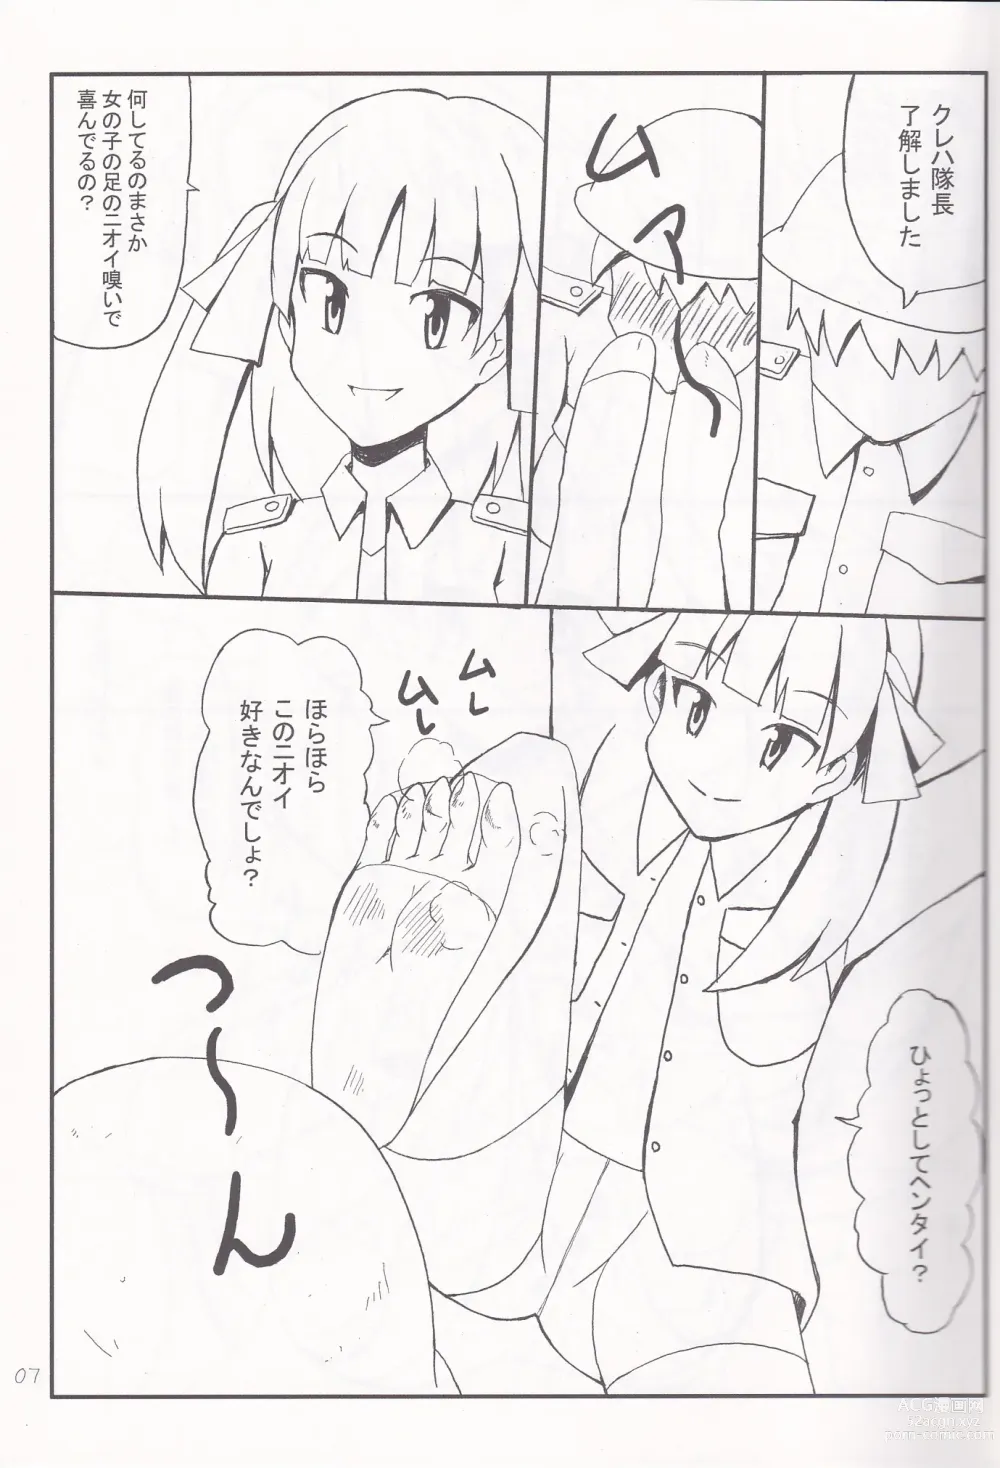 Page 6 of doujinshi Ashi no Ura